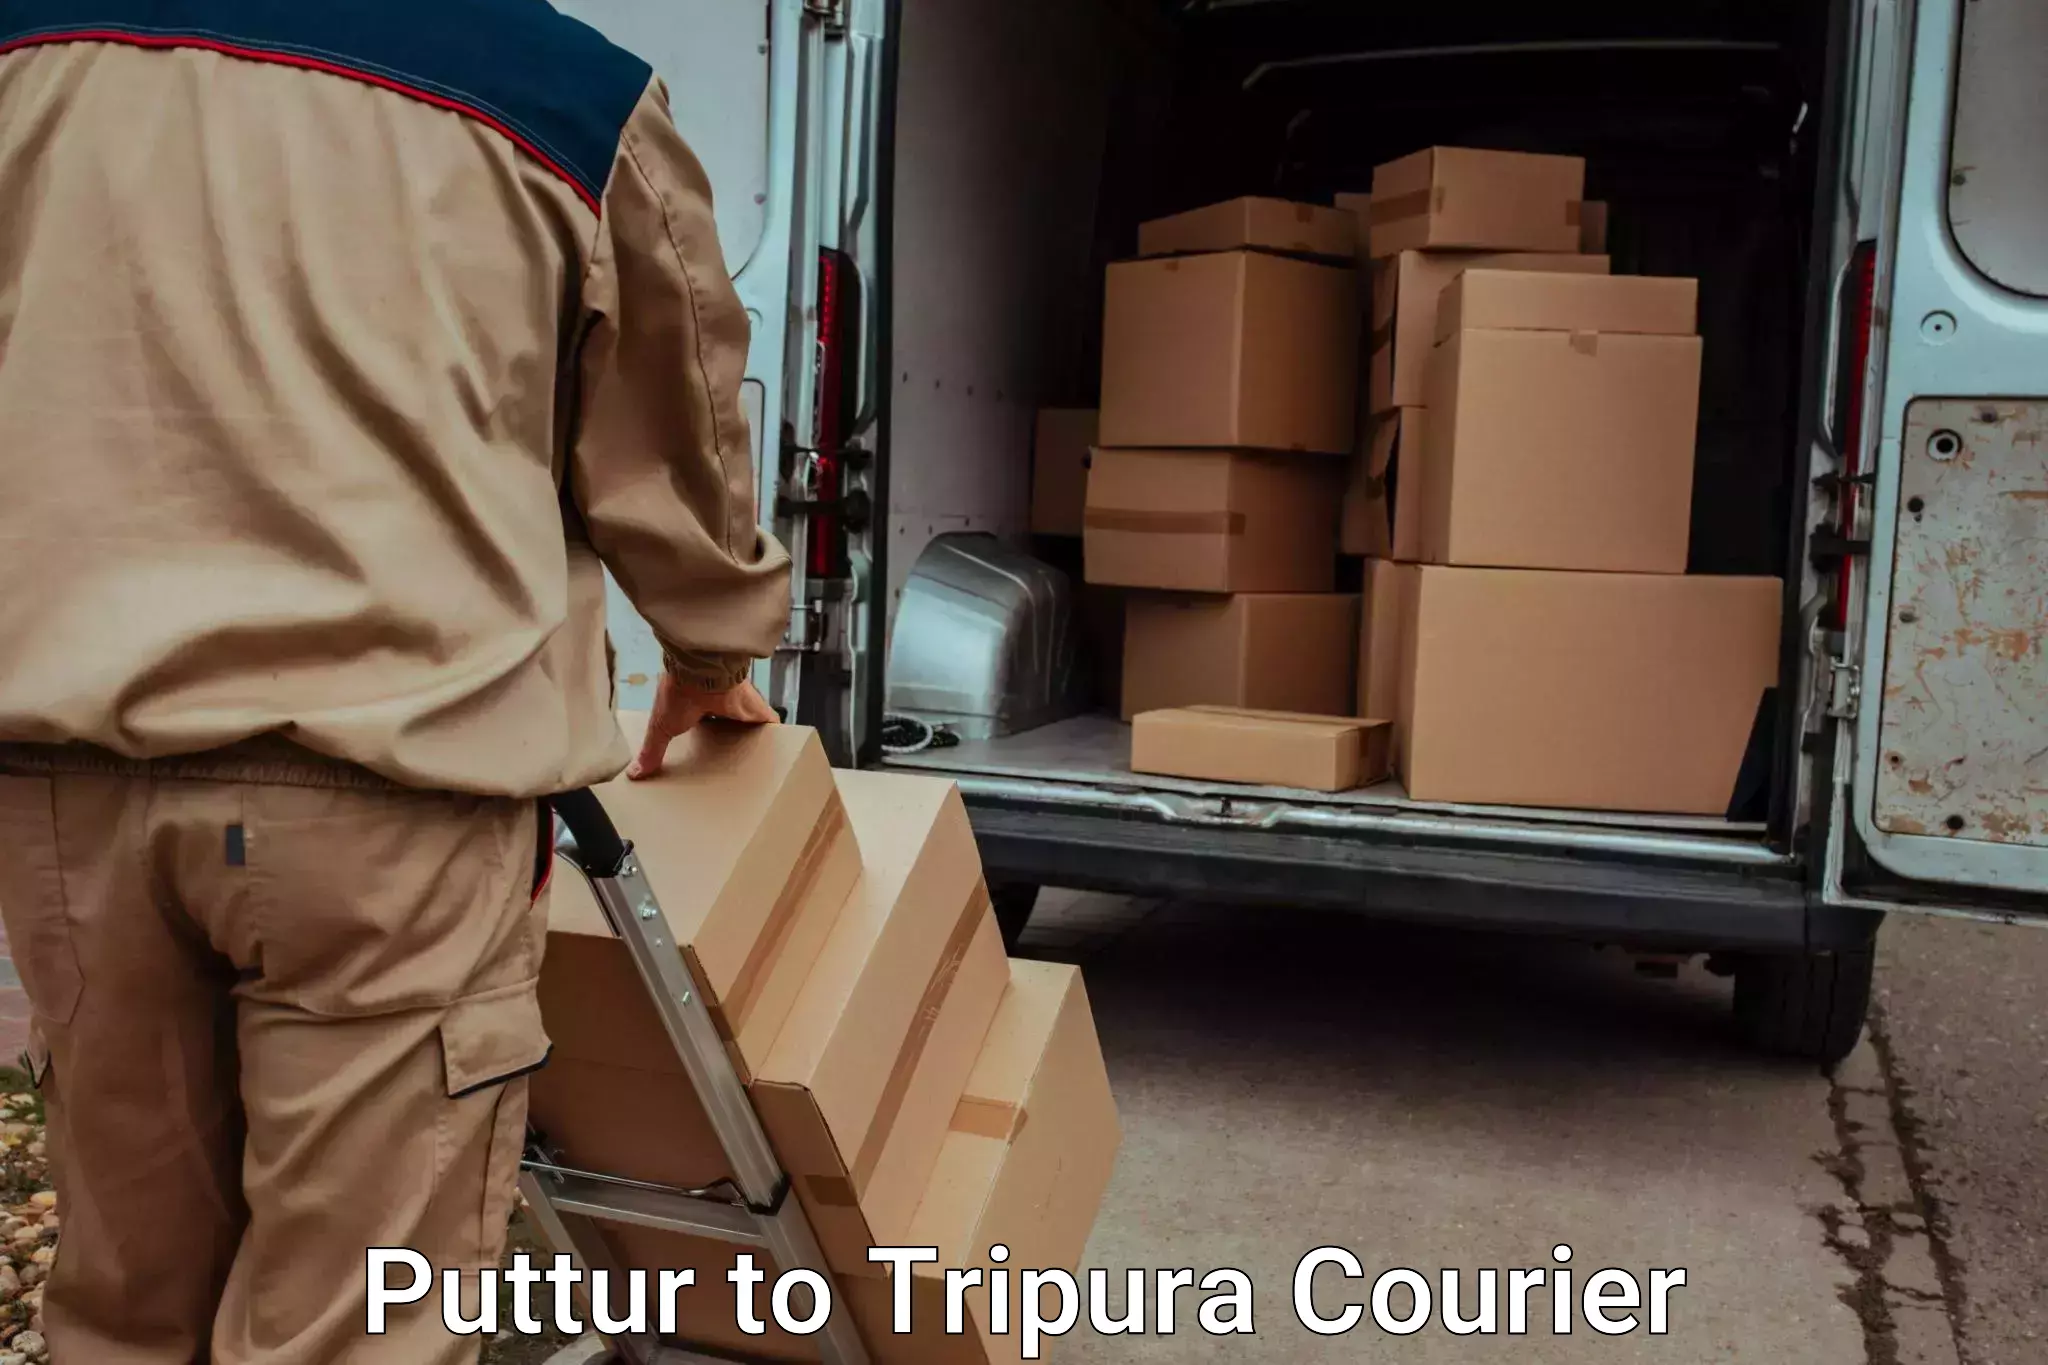 Furniture transport company Puttur to Tripura